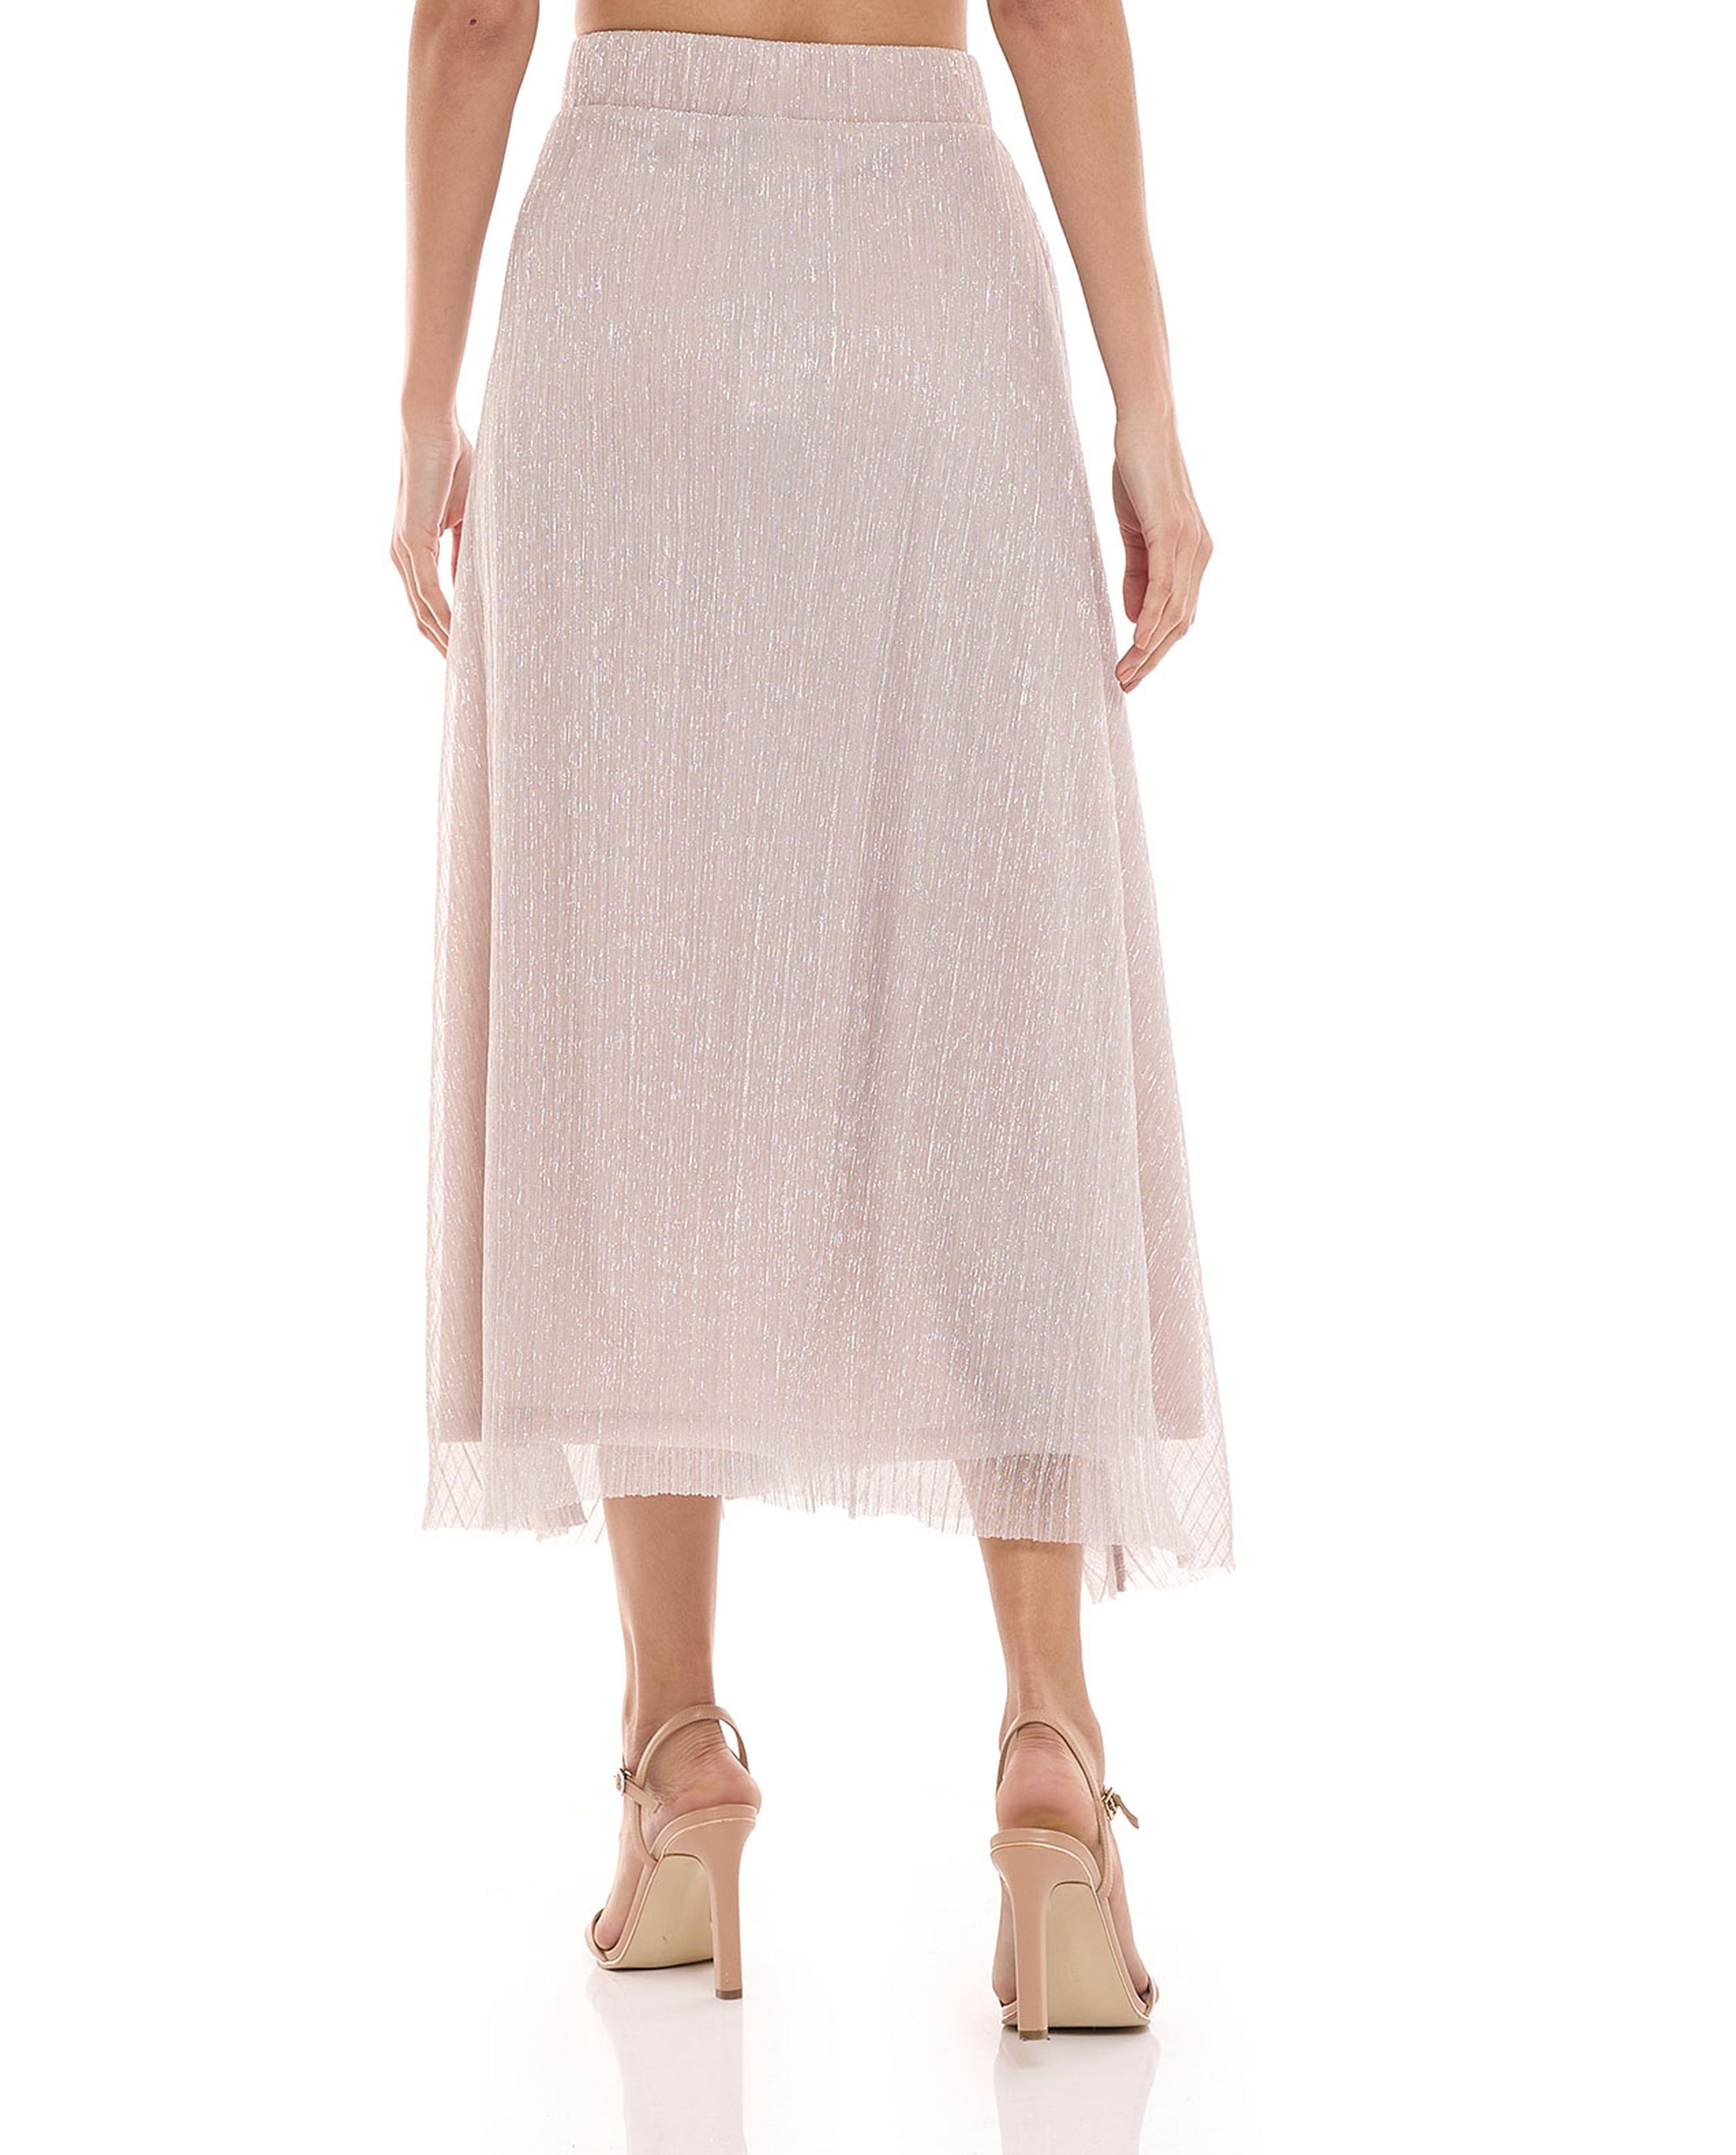 Shimmer A-Line Elastic Waist Skirt